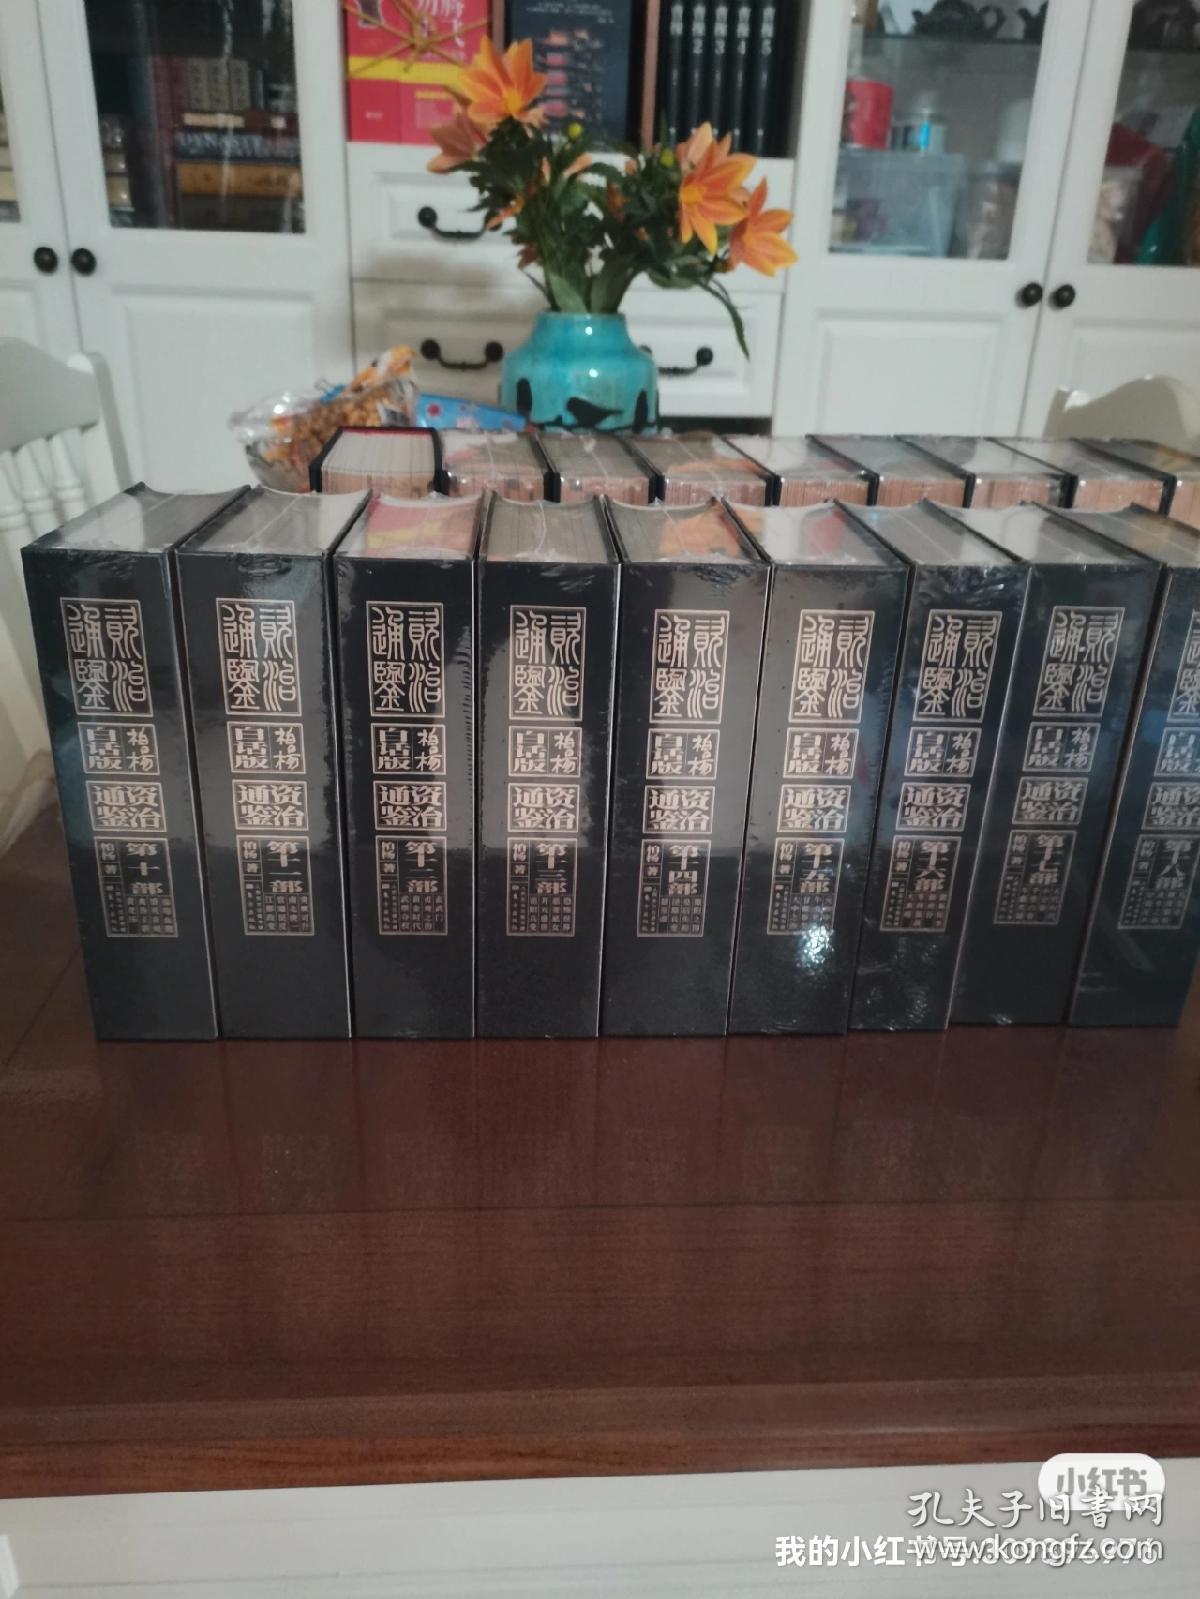 人民东方出版社柏杨版《白话资治通鉴》，十八册特装一体喷绘绝无仅有。